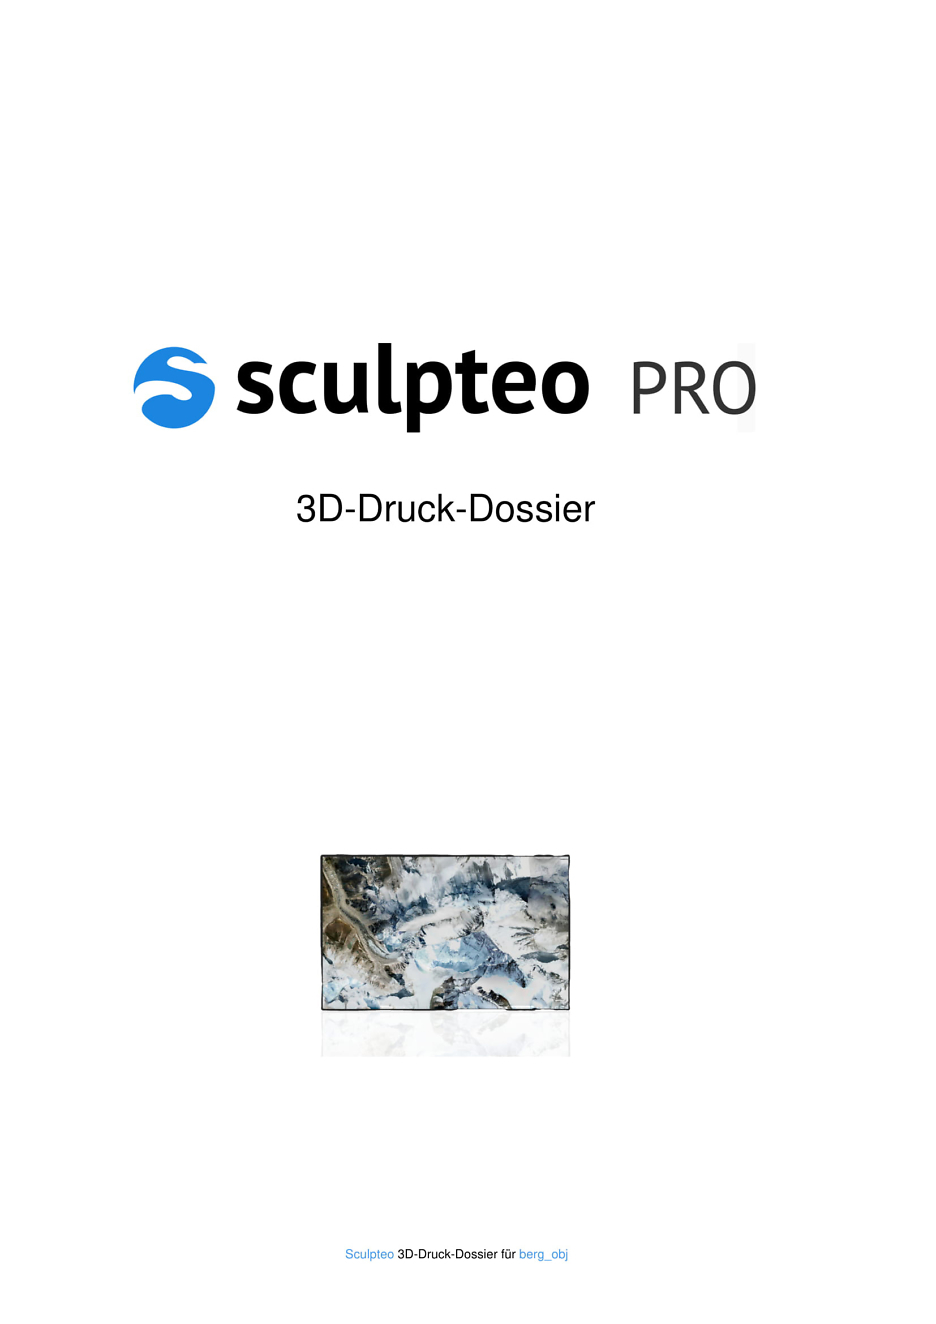 3D-Druck-Dossier Mount Everest Deckblatt